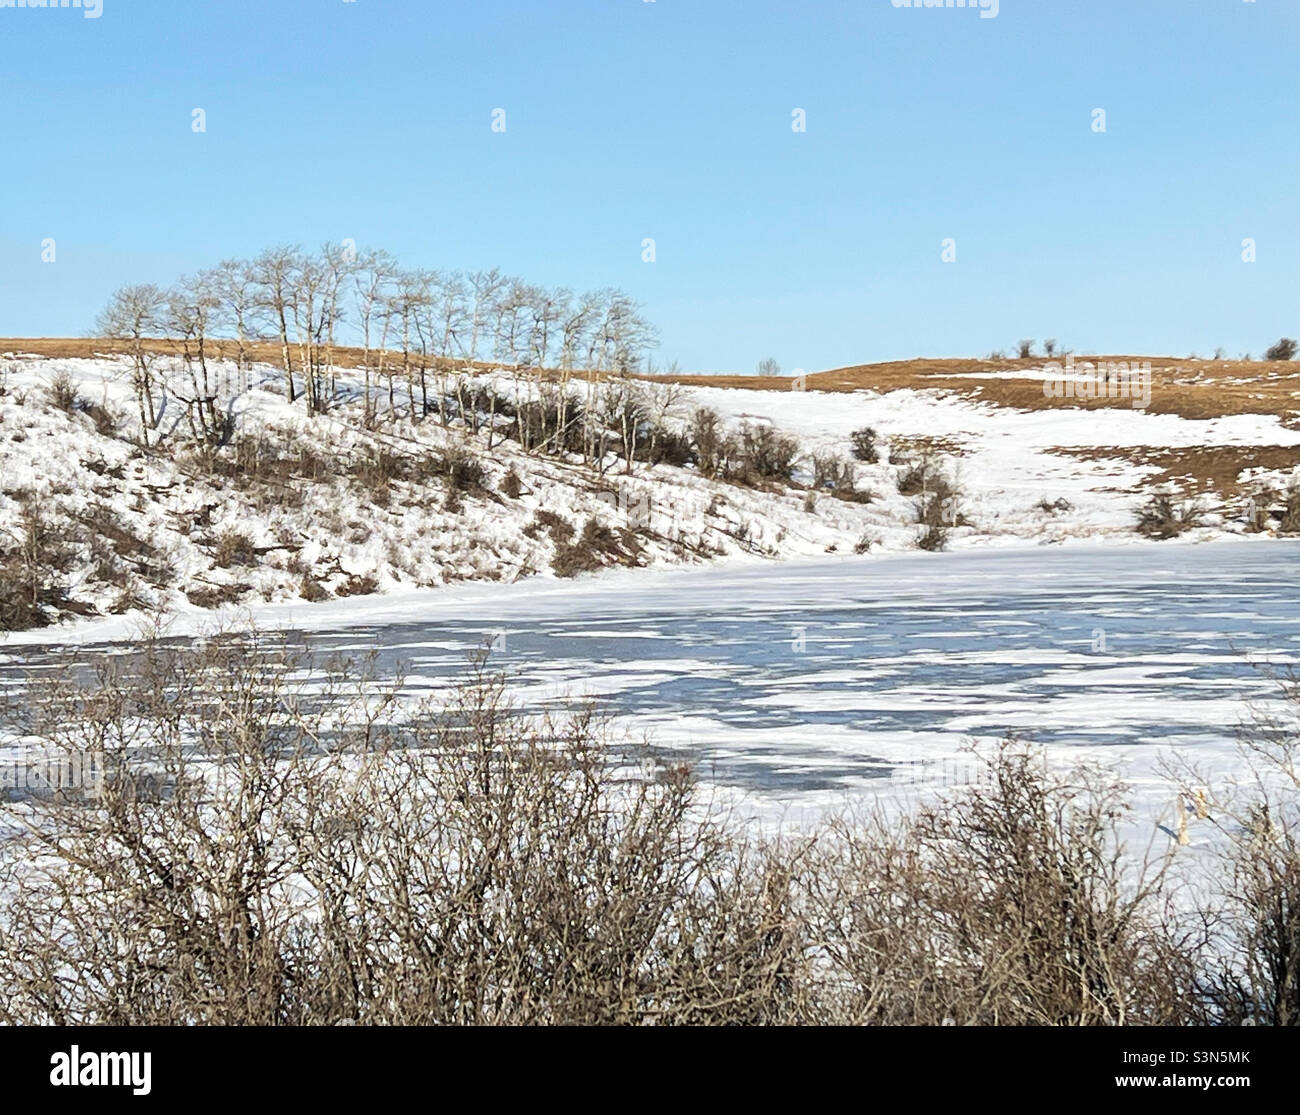 Étang partiellement couvert de neige, commençant à fondre après une période de temps doux.Foothills, près de Calgary, Alberta, Canada. Banque D'Images